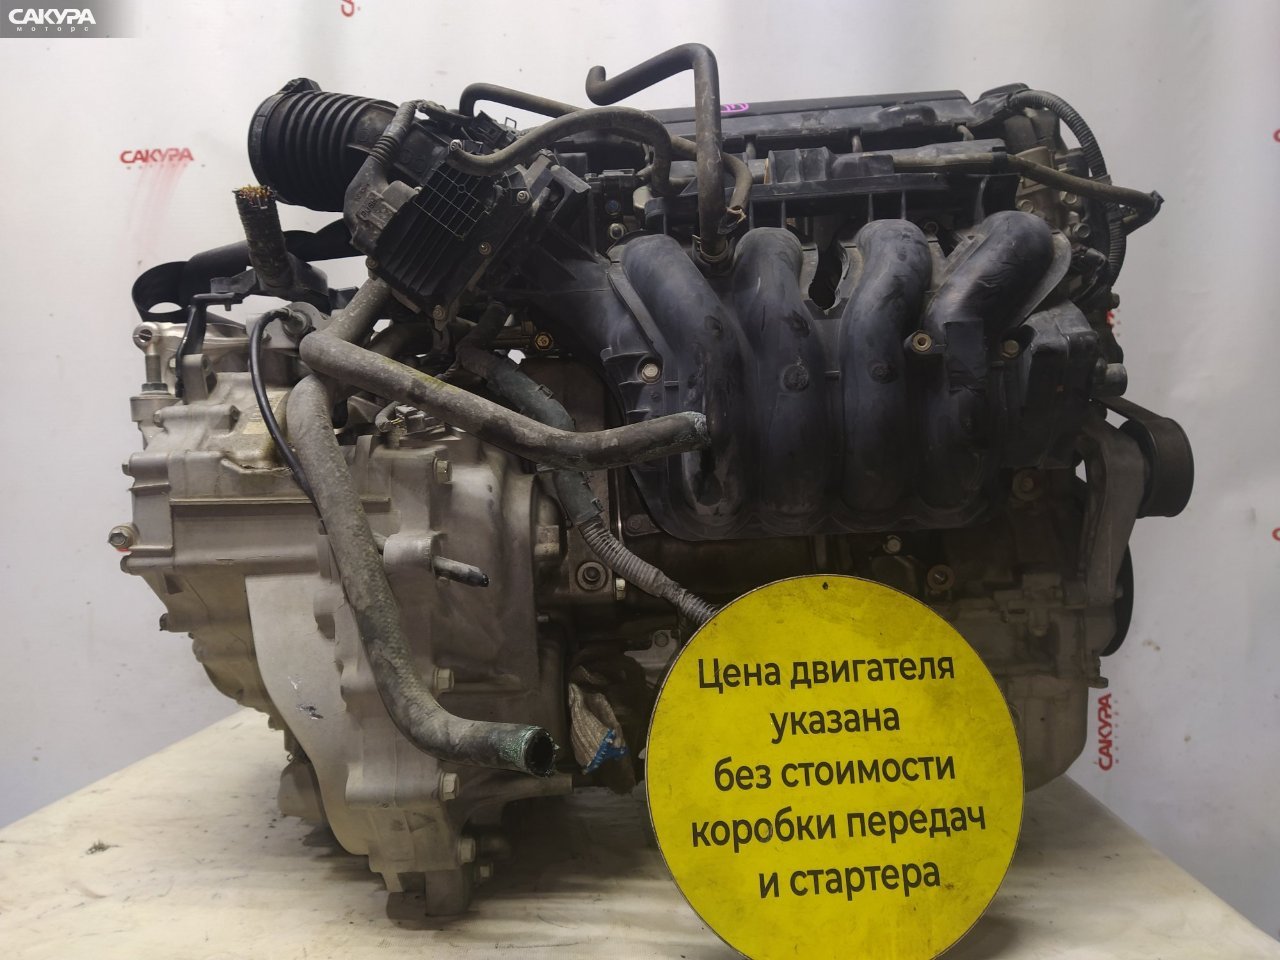 Двигатель Honda Stepwgn RK1 R20A: купить в Сакура Красноярск.